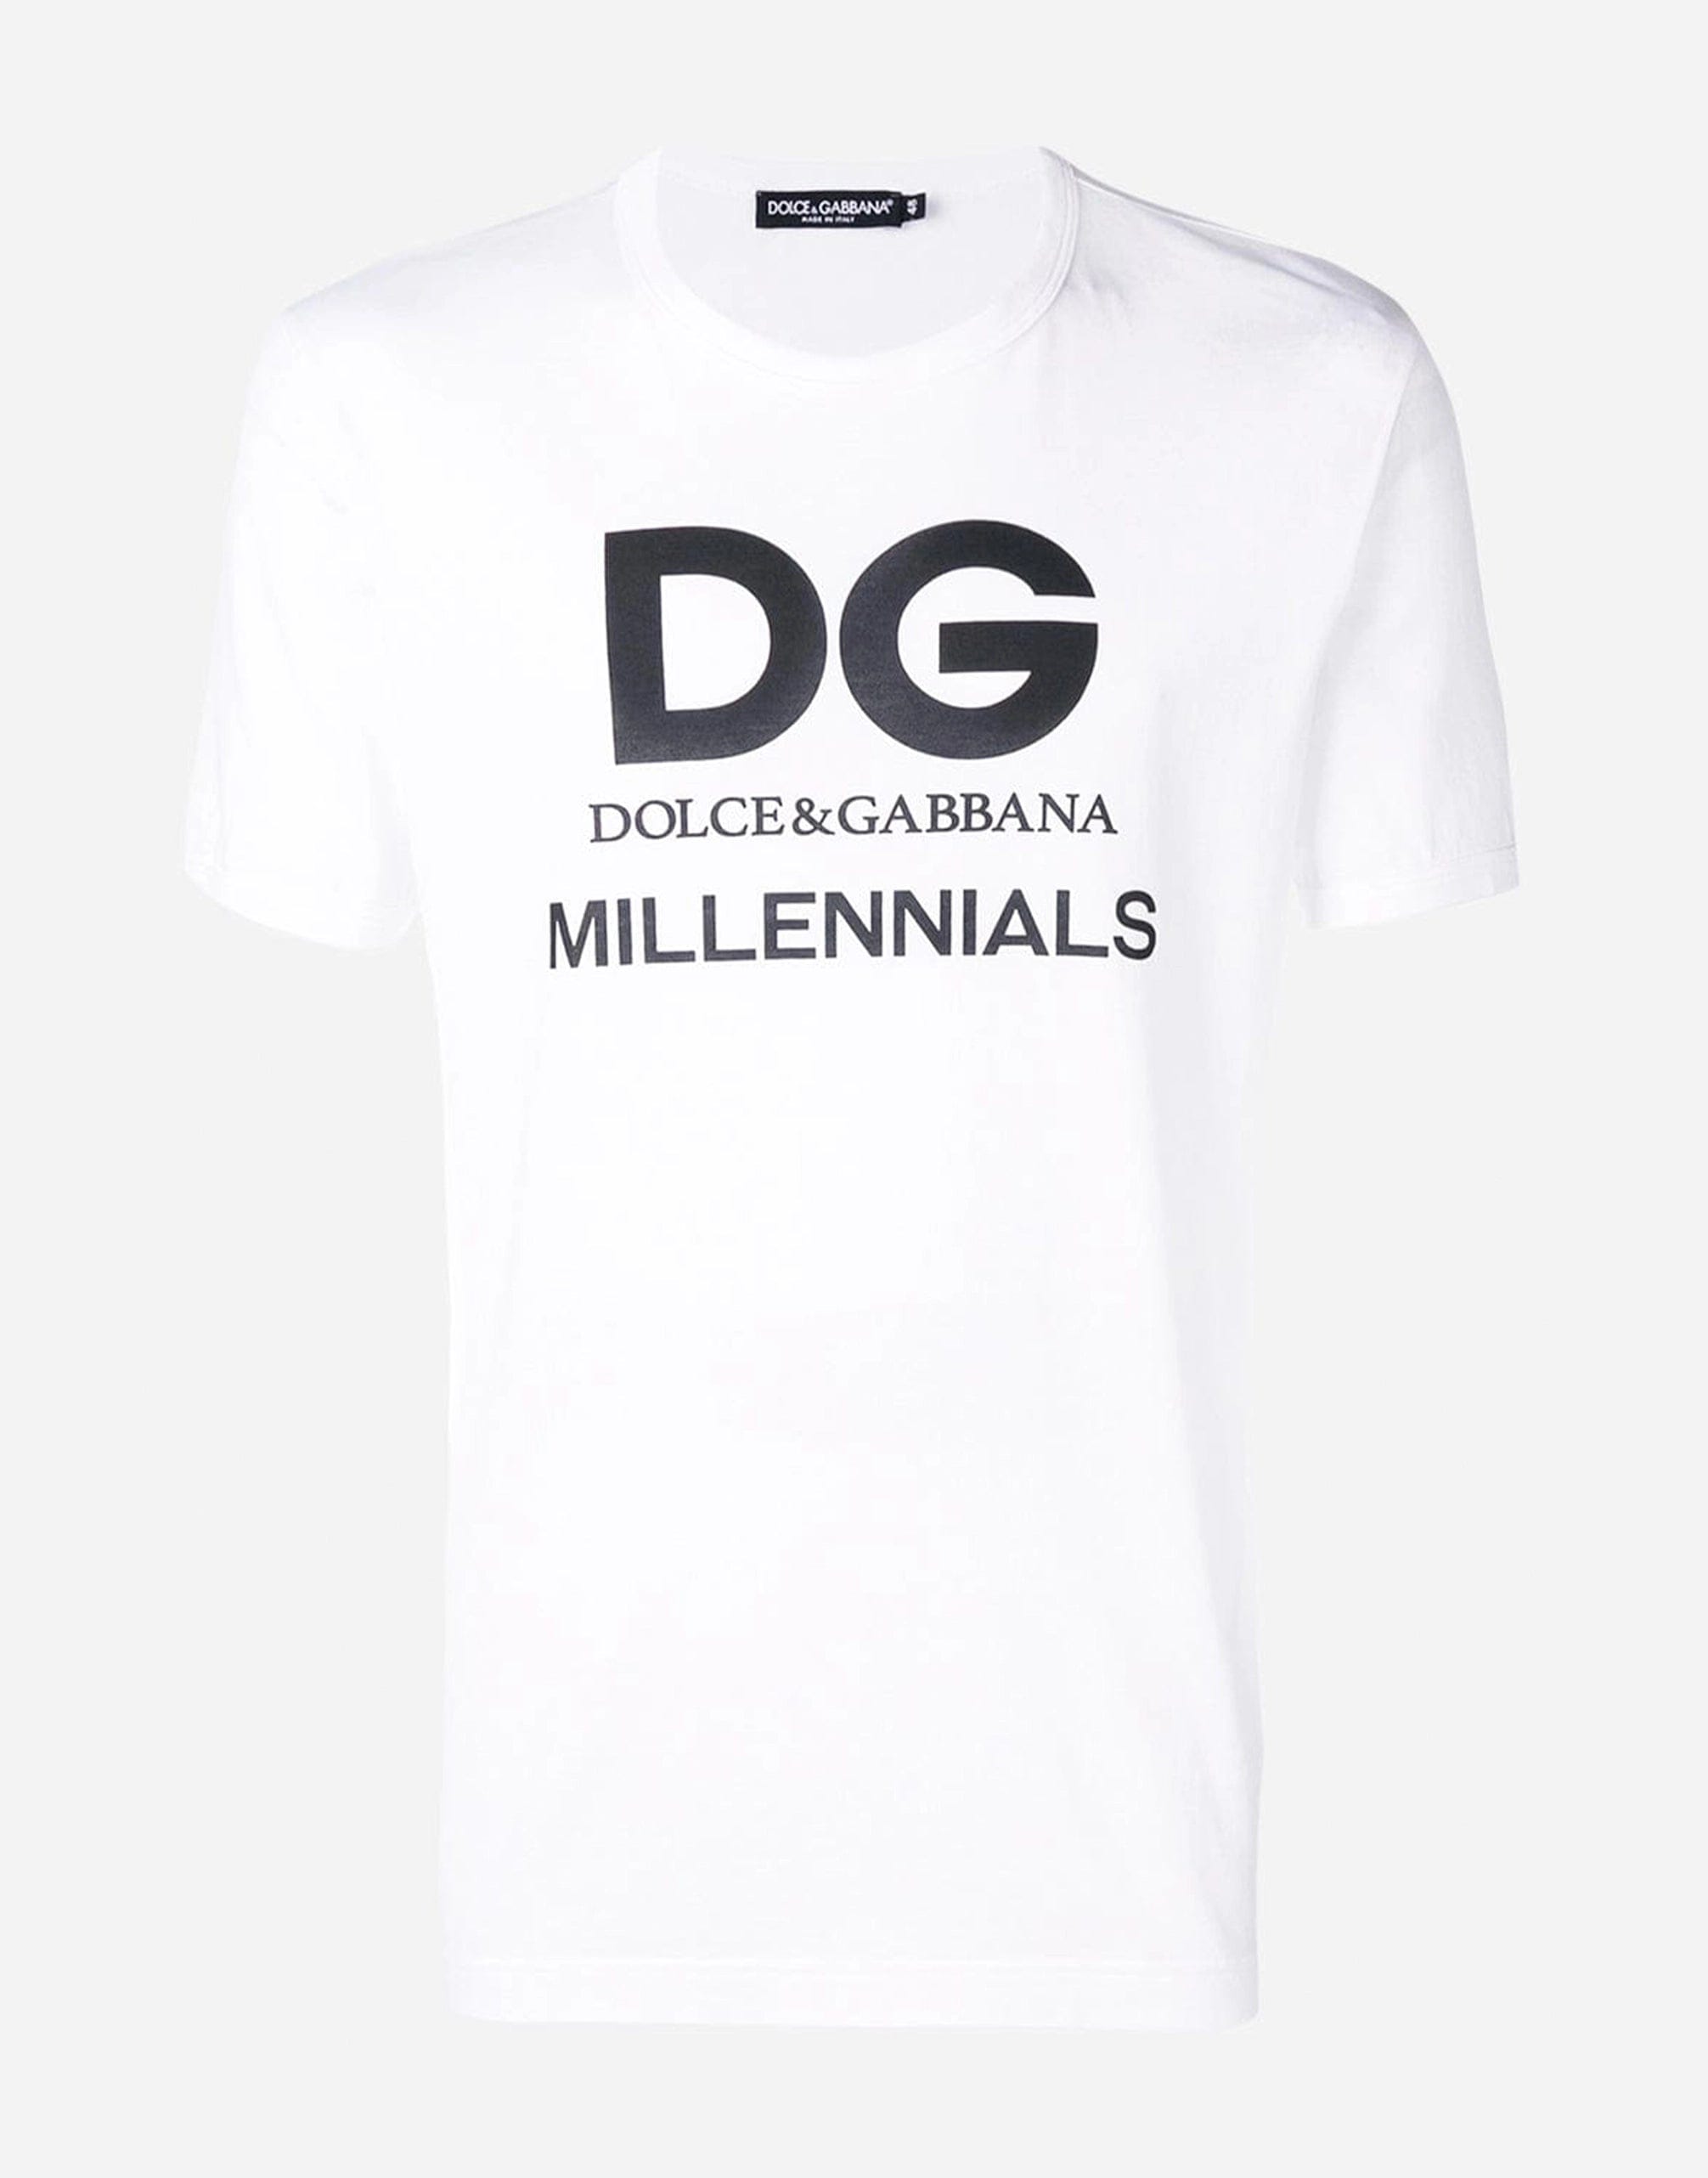 Dolce & Gabbana DG Millennials Print T-Shirt